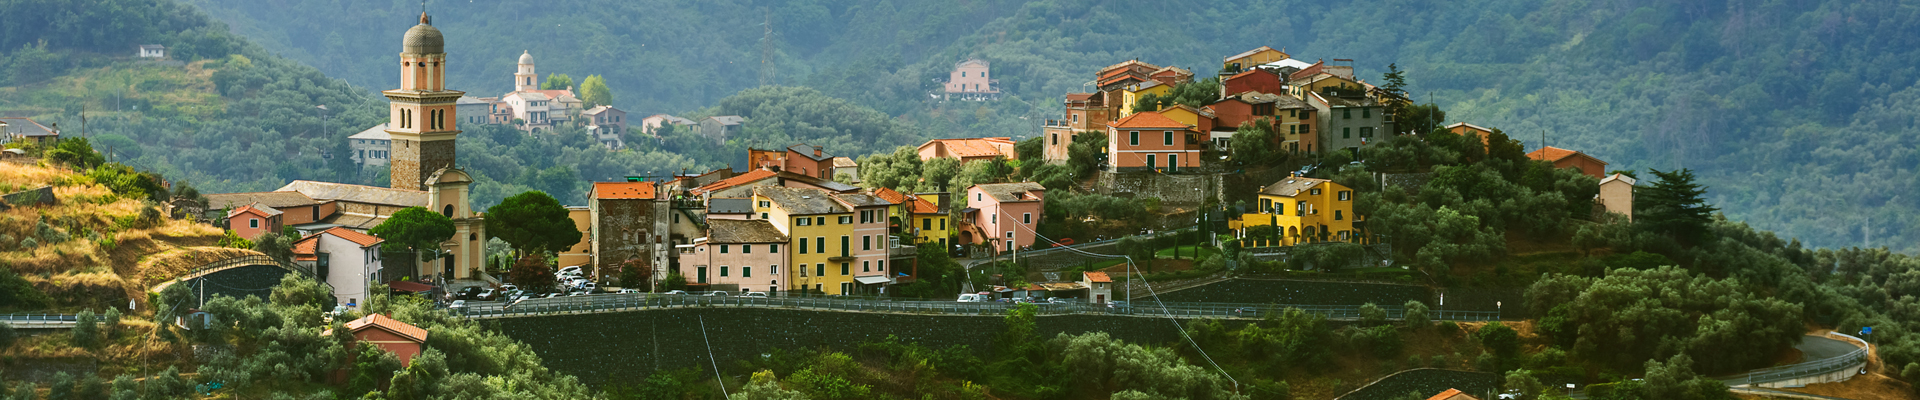 Cinque Terre in Italy's Liguria Region